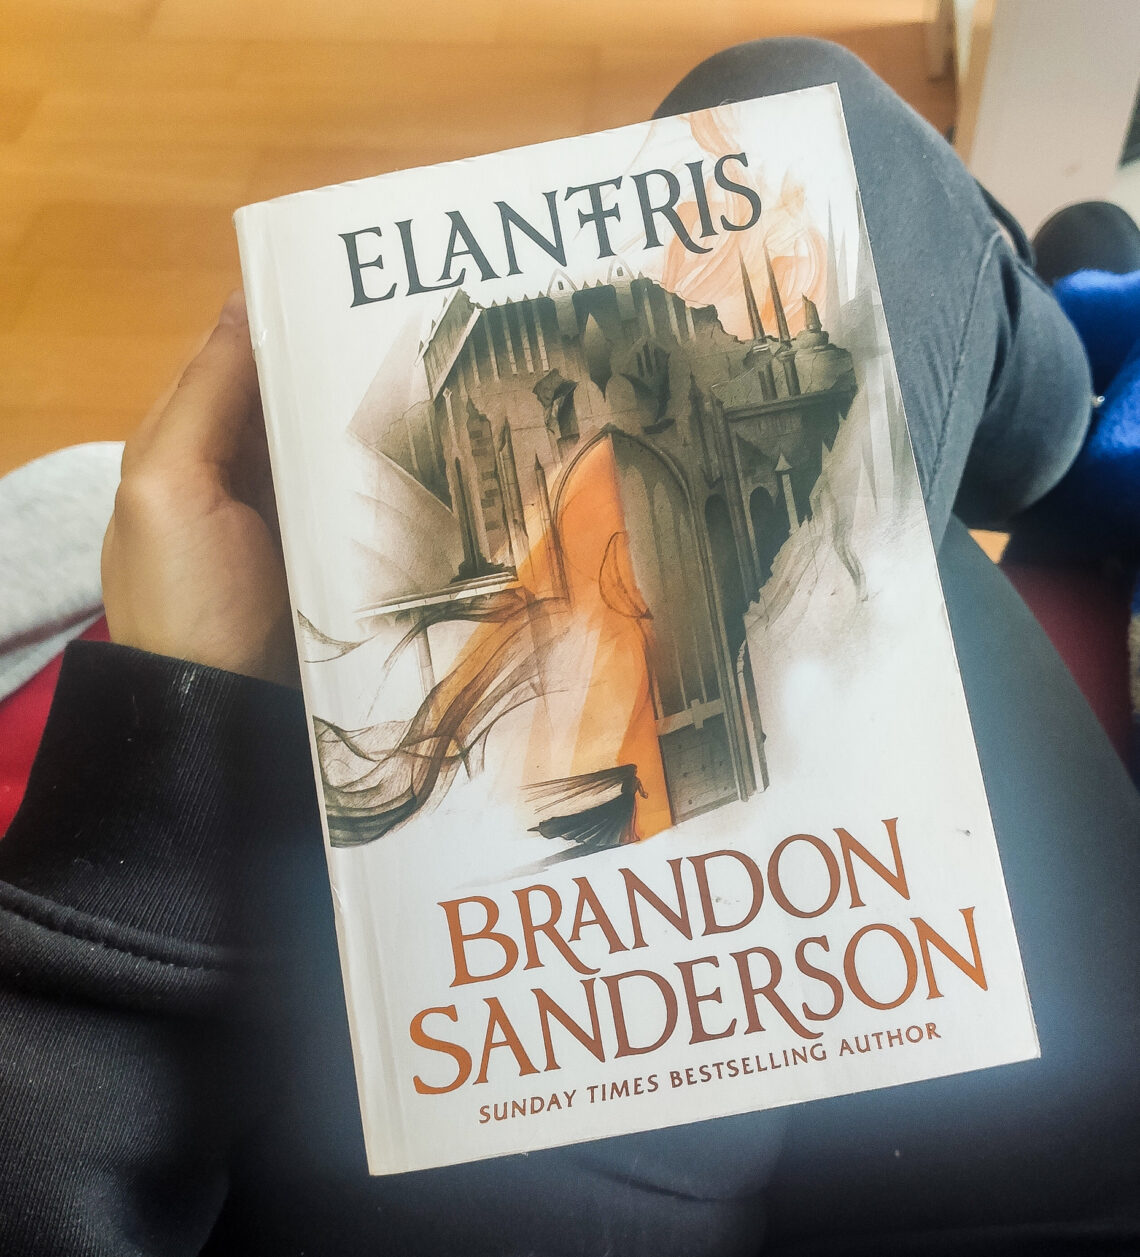 ‘Elantris’ by Brandon Sanderson